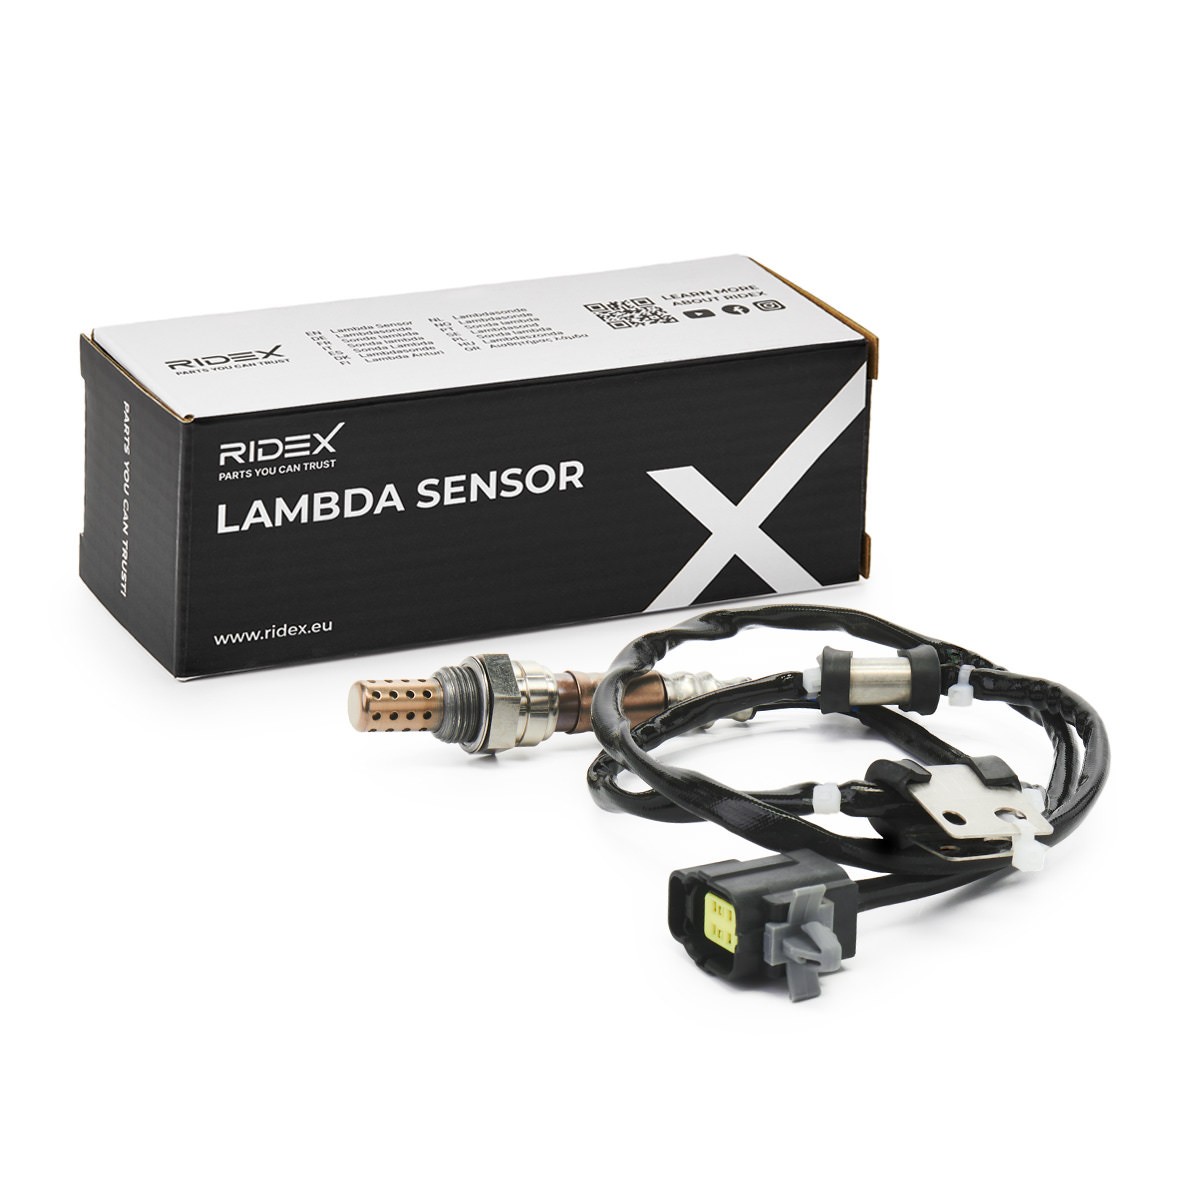 RIDEX 3922L0516 Lambda sensor M18x1.5, Regulating Probe, 4